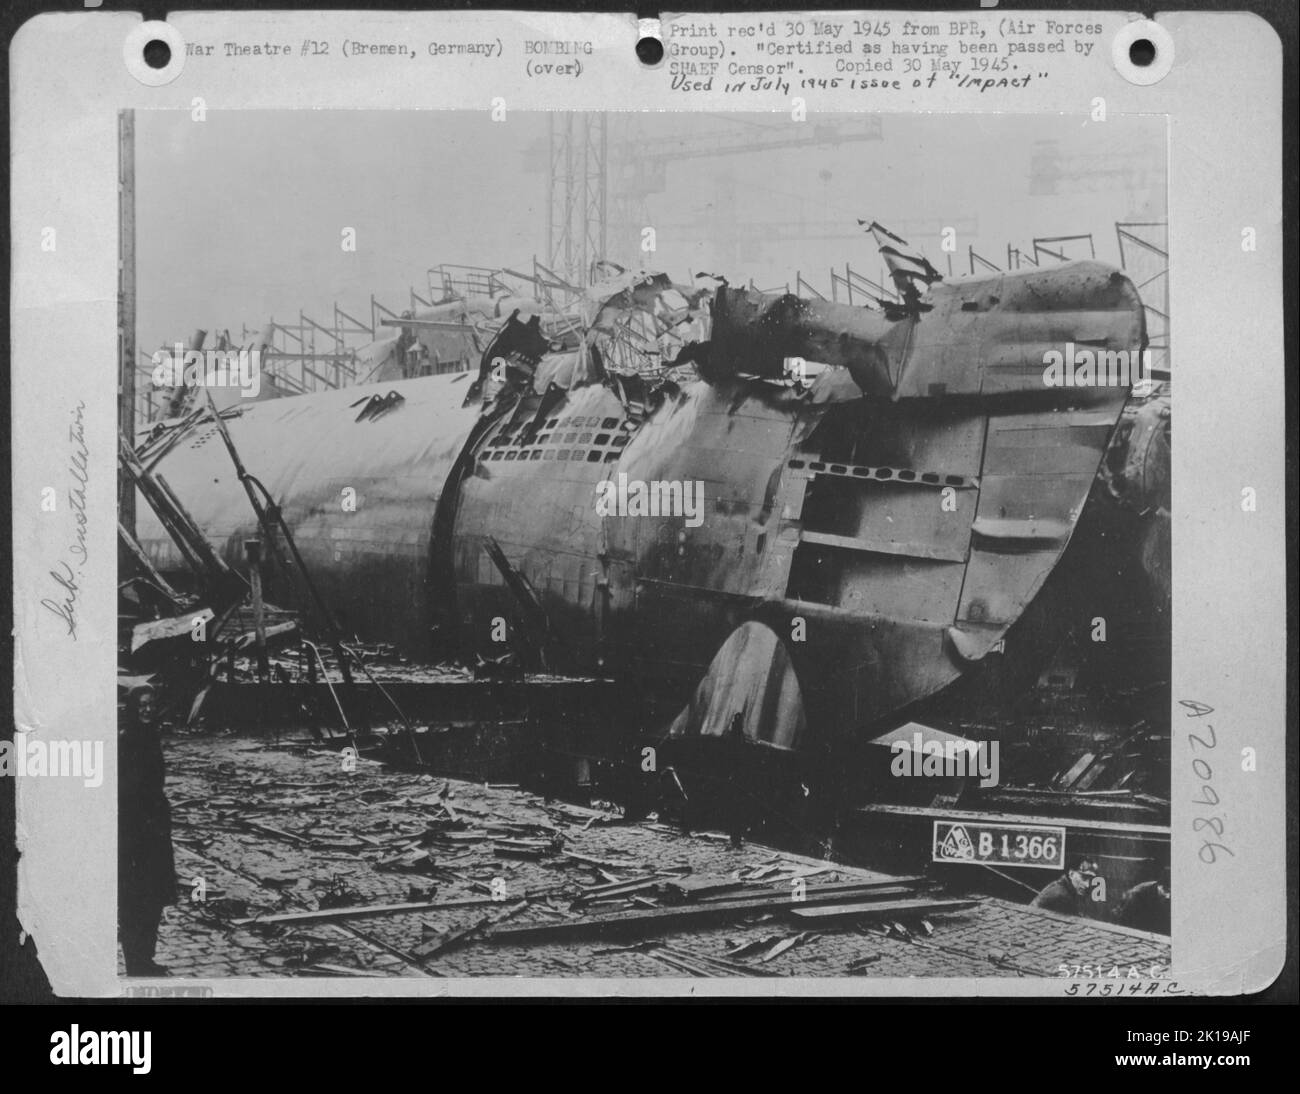 Dieses Foto eines U-Bootes, das während der Montage bombardiert wurde, zeigt die Marke des offiziellen Fotografen der Deshimag'S Bremen Werften und zeigt punktierte Ballasttanks. Beachten Sie die glatt geschweißten Nähte des New Snicting U-Bootes - so genannt Since IT Was Fitte Stockfoto